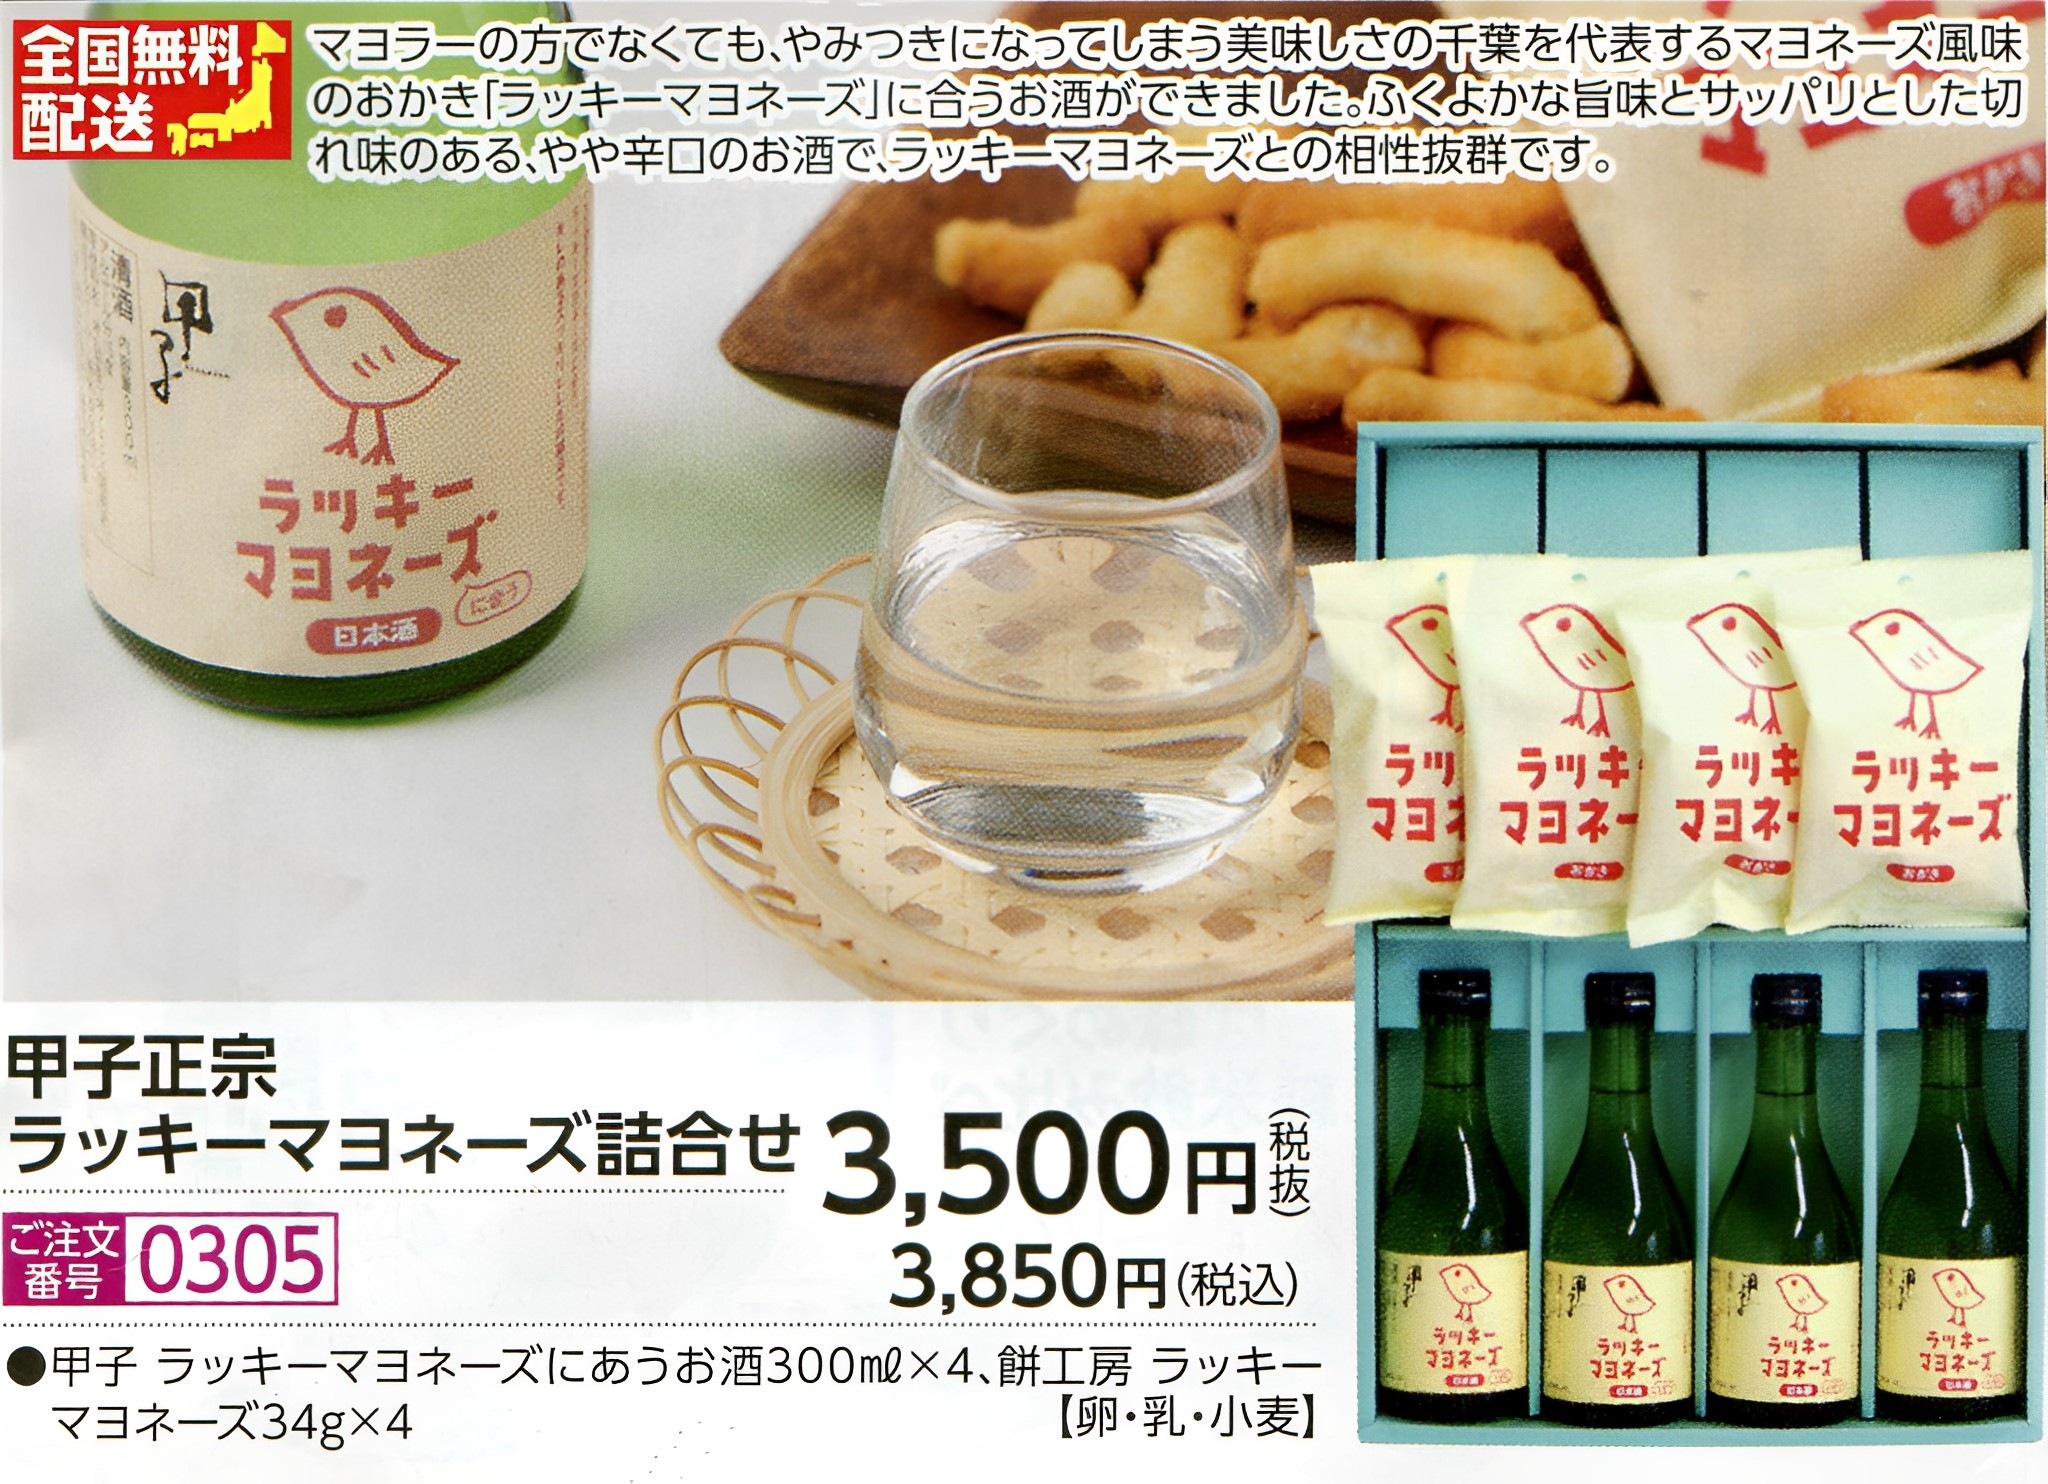 【全国送料無料】甲子ラッキーマヨネーズに合うお酒とラッキーマヨネーズおかきセット画像